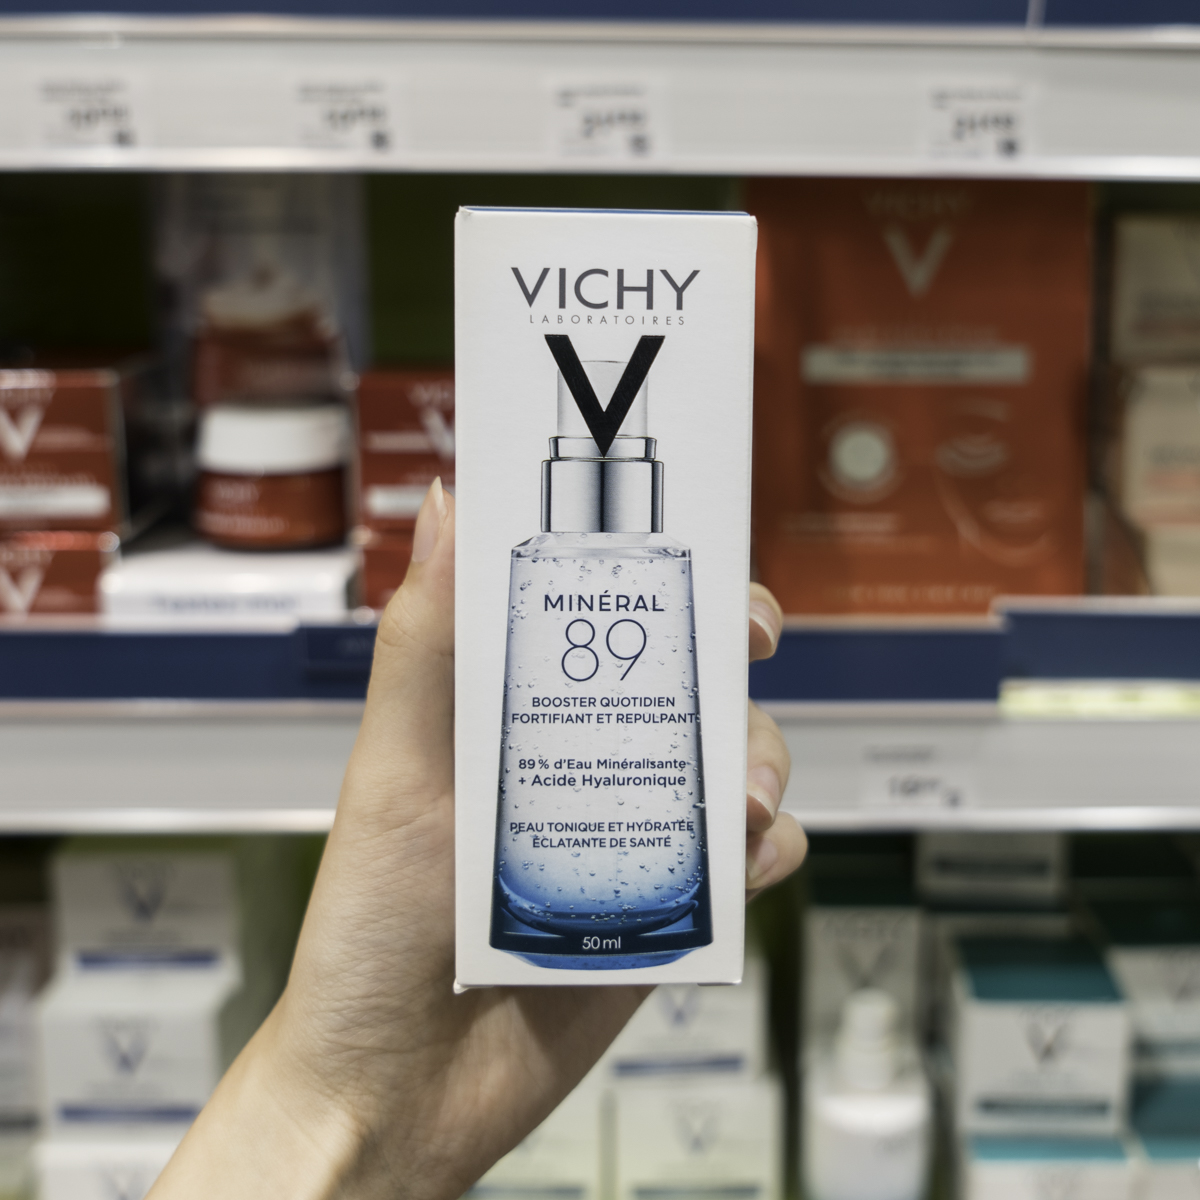 Mua sản phẩm của Vichy ở Paris